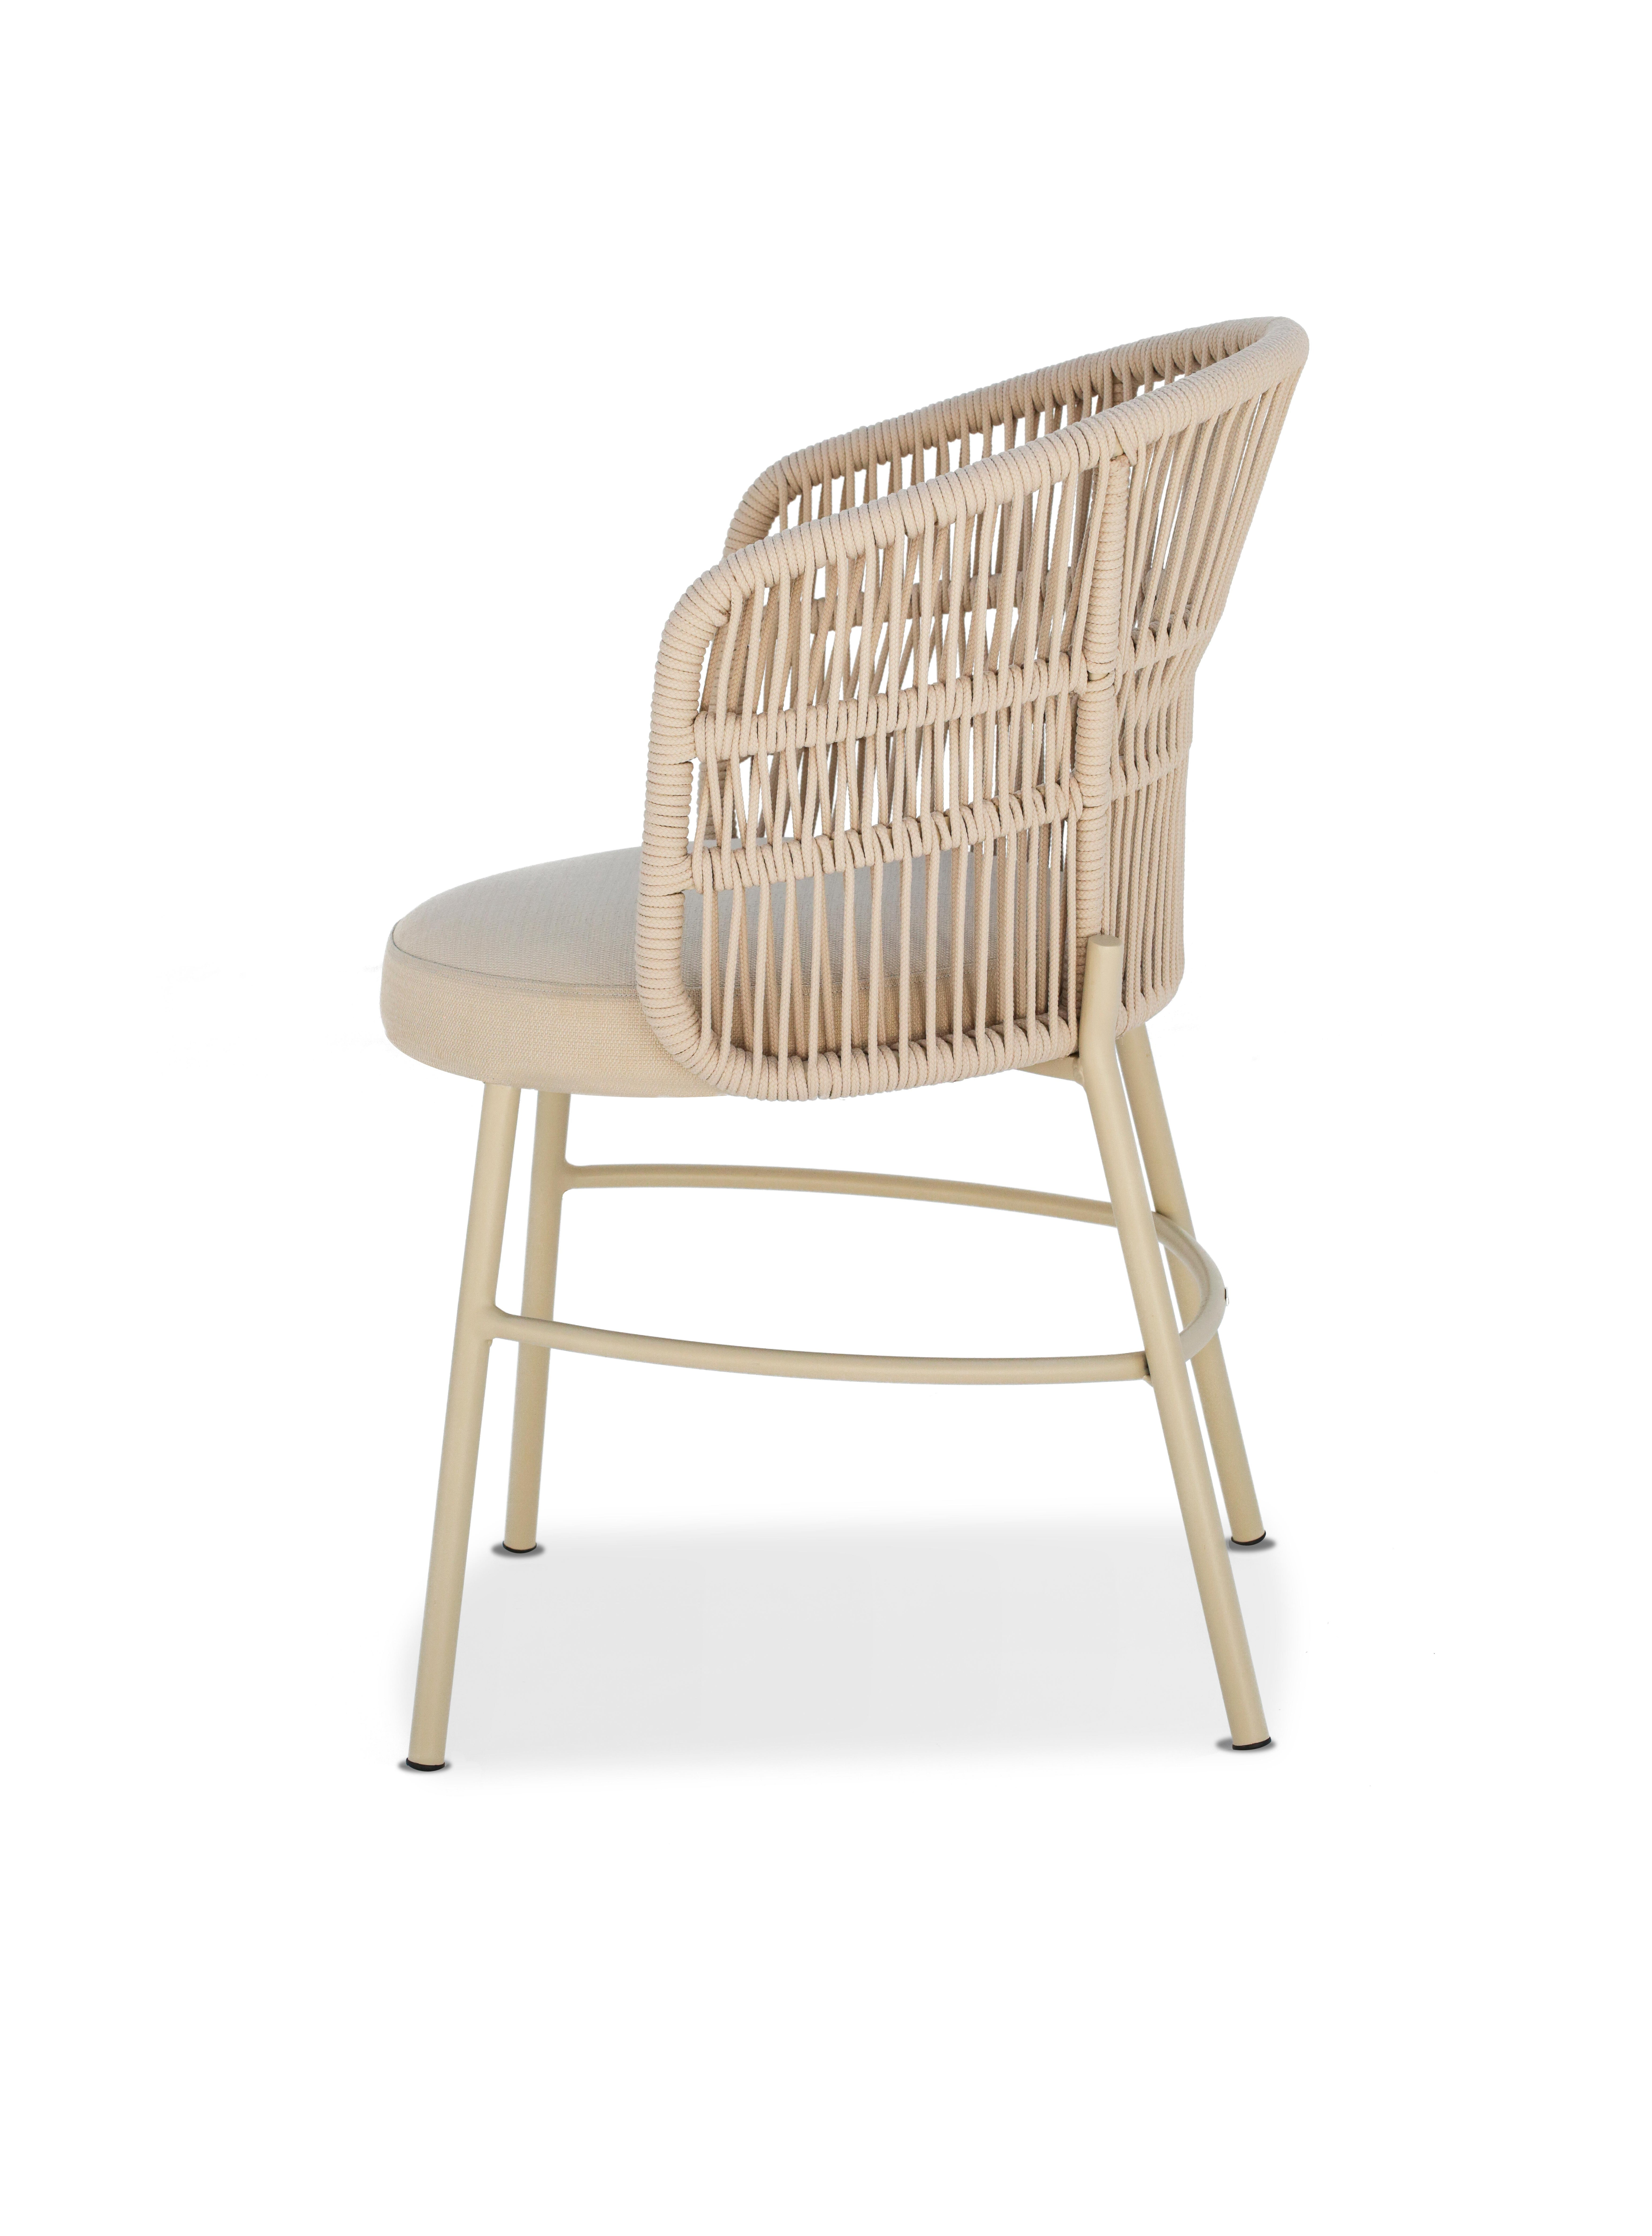 Avec ses formes courbes et fluides, le design de la chaise Amalfi s'inspire de la nature de la côte amalfitaine italienne.
Sa fluidité offre un design épuré et intemporel, facile à combiner dans les environnements.

La structure est en aluminium et